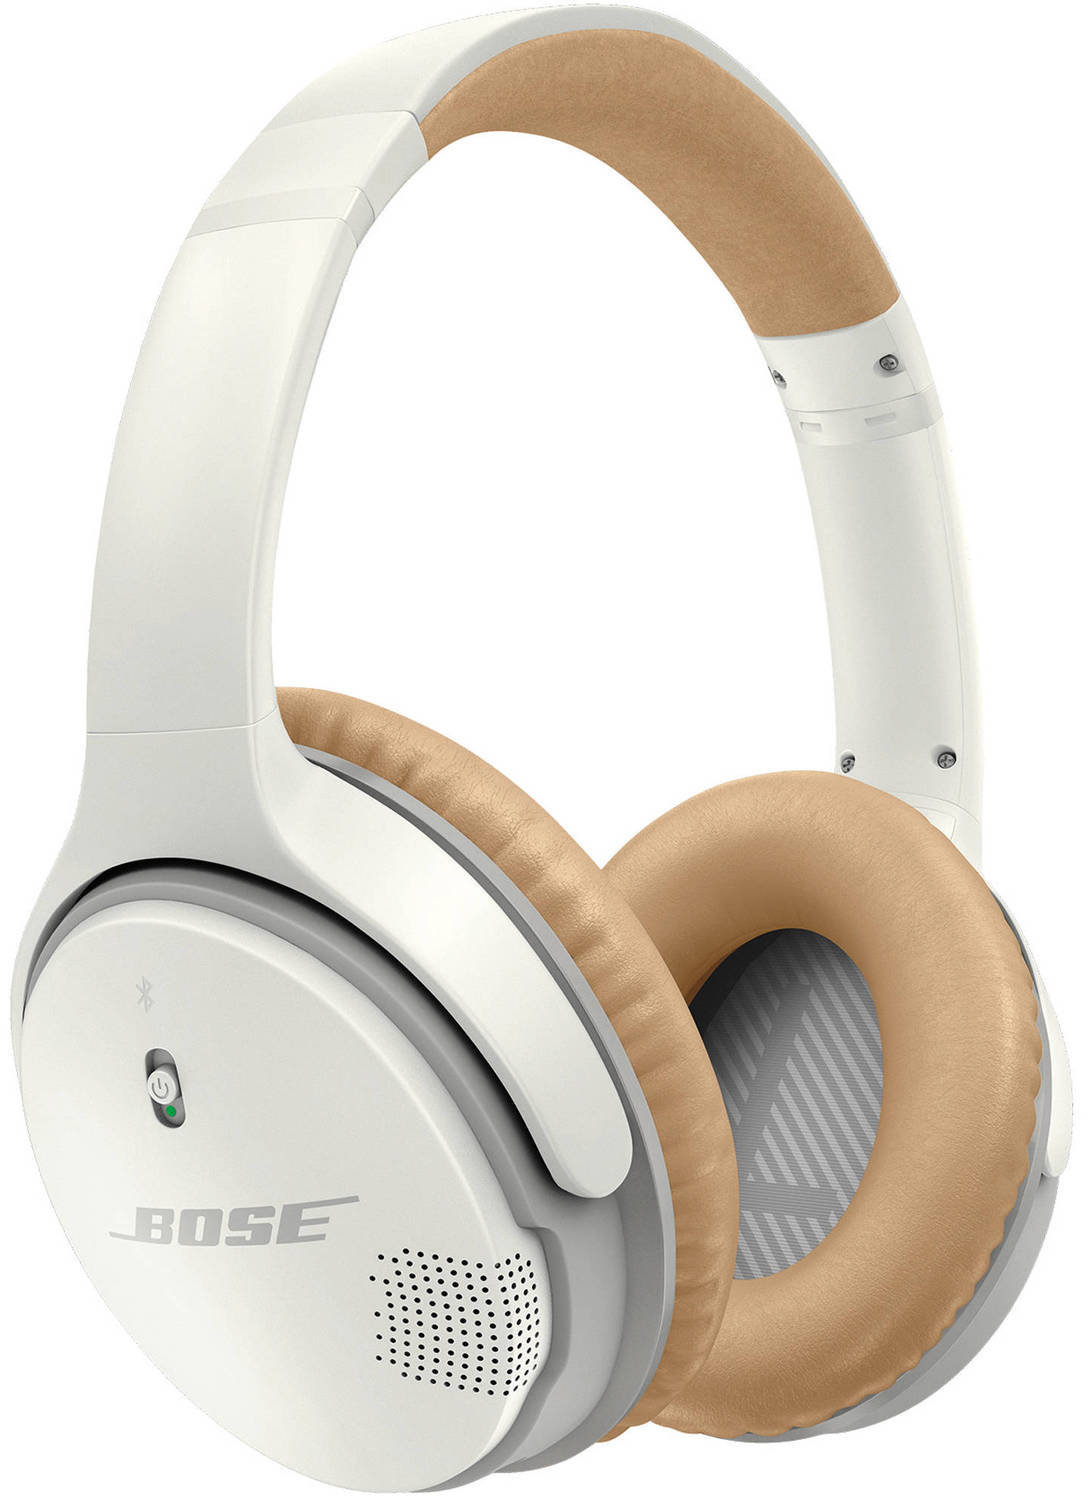 Wireless On-ear headphones Bose SoundLink Around-Ear Wireless Headphones II White